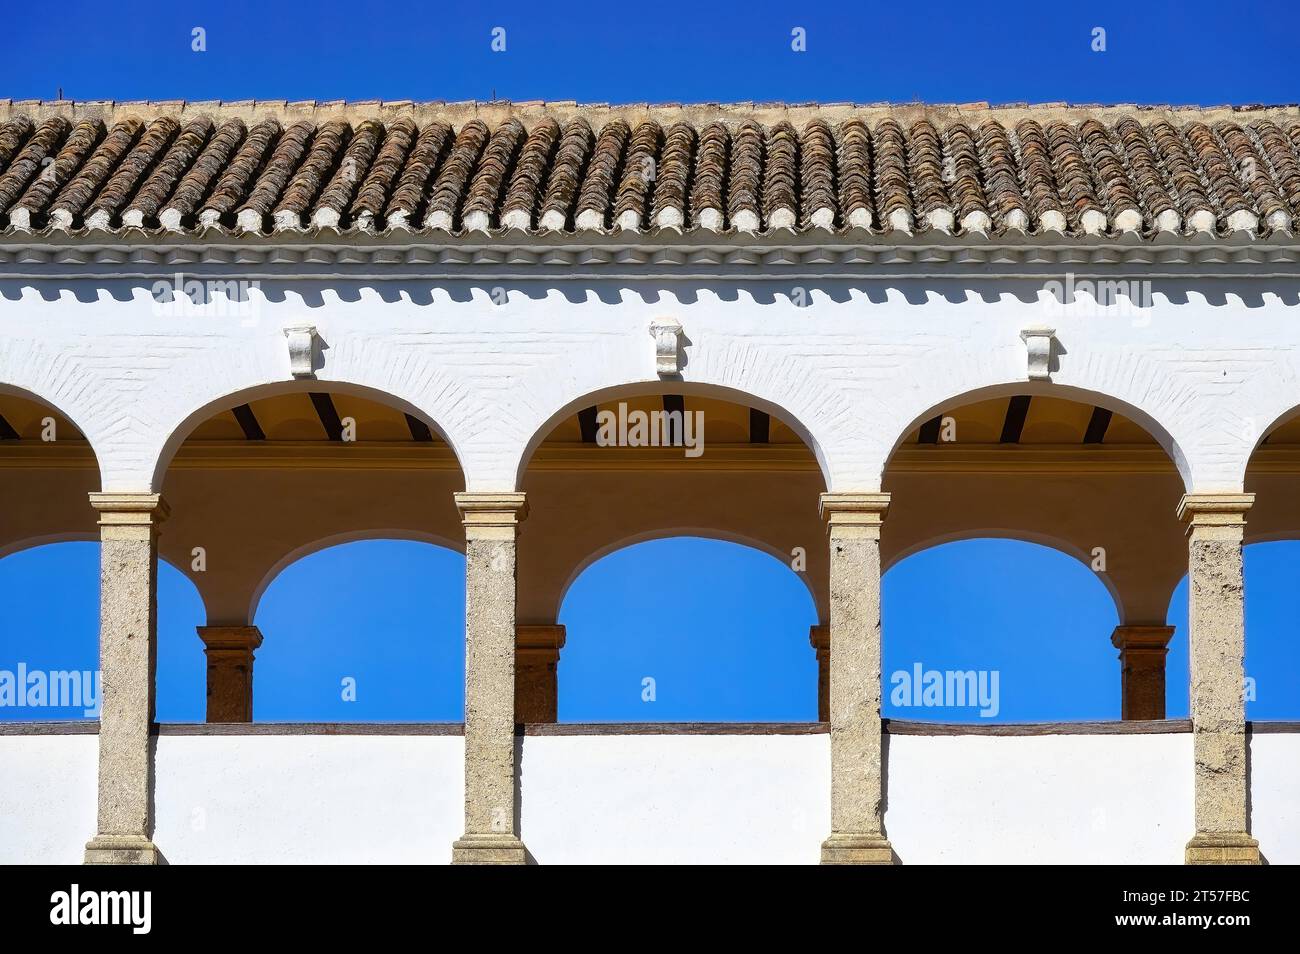 Granada, Spagna, archi e tetto piastrellato in argilla parte del palazzo all'interno del complesso dell'Alhambra. Caratteristica architettonica islamica medievale del monumento nazionale. Foto Stock